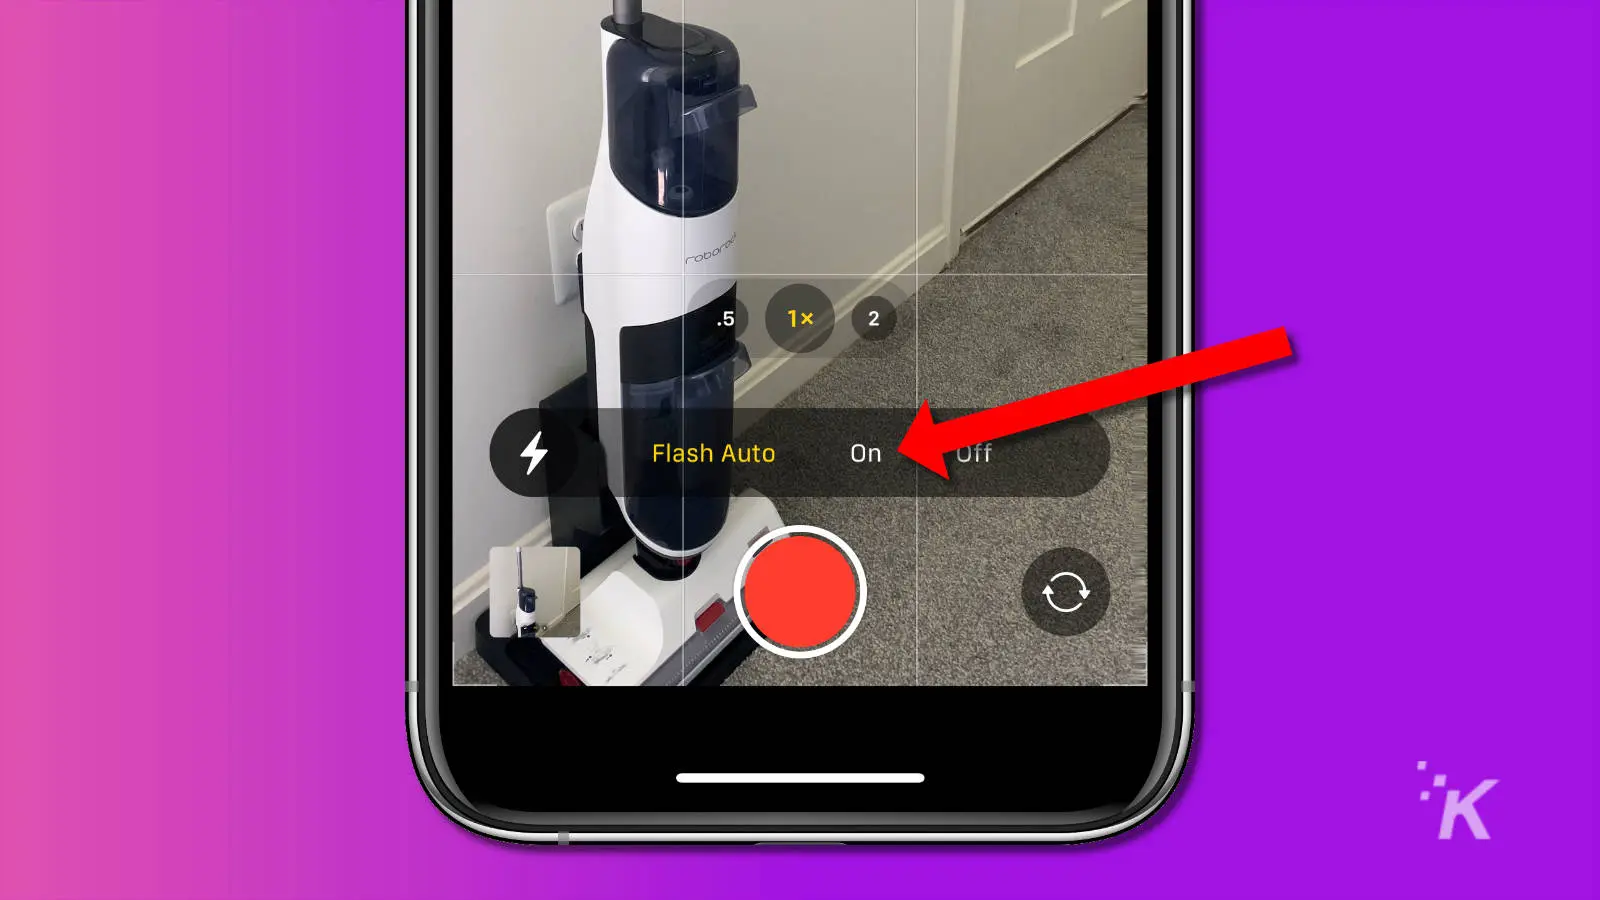 Captura de pantalla de la aplicación de la cámara del iPhone que muestra el flash aún opcional